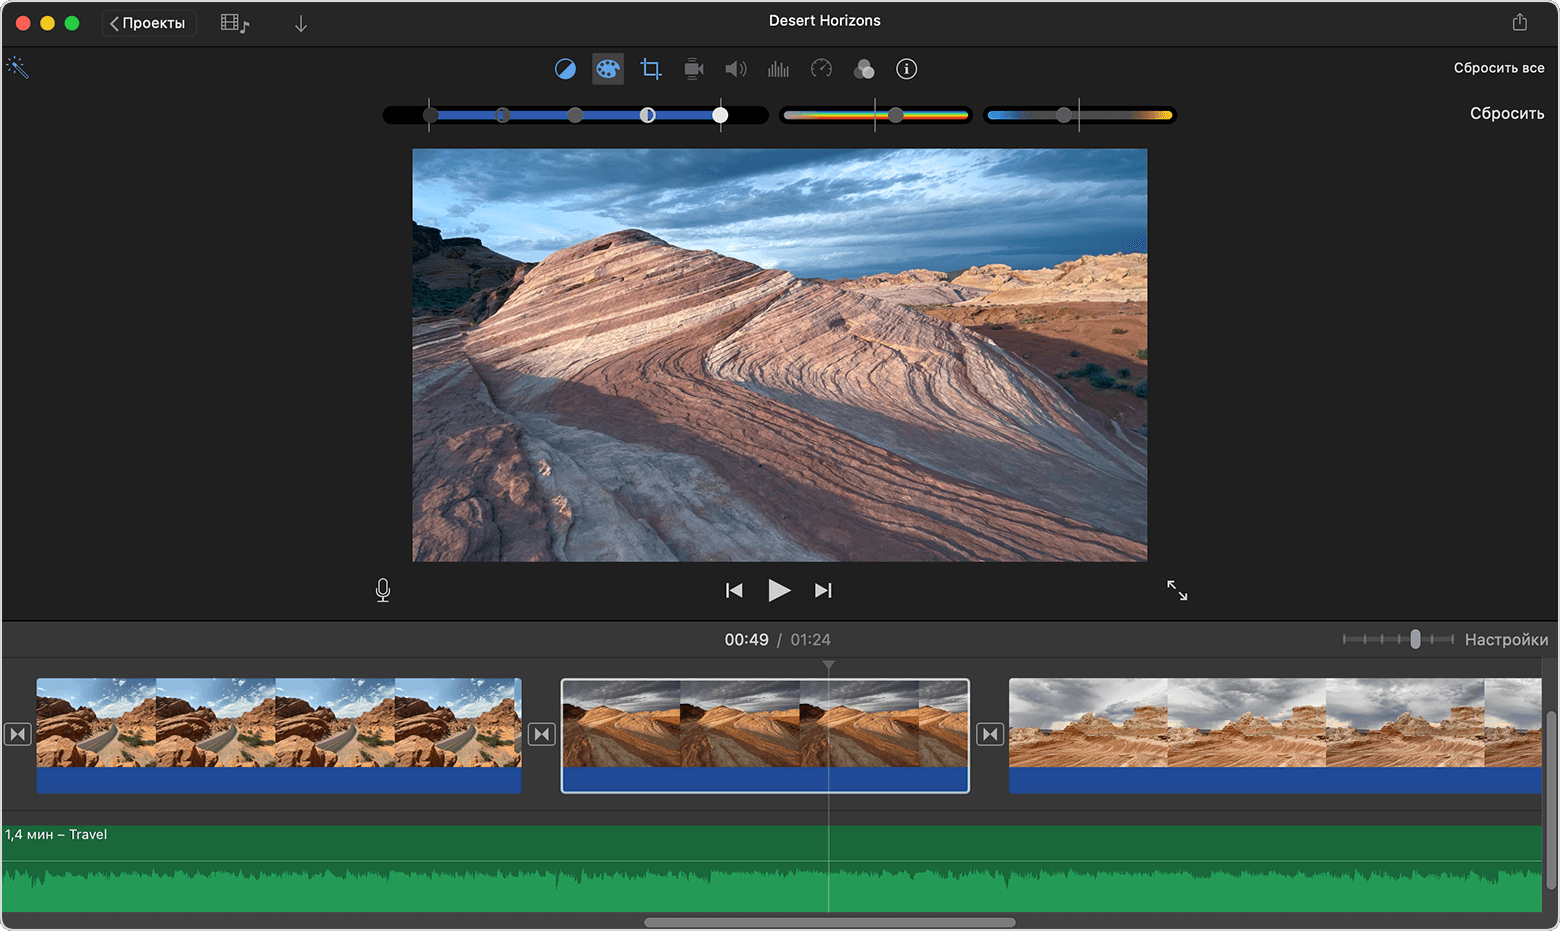 Окно проекта iMovie на Mac с элементами управления коррекцией цвета